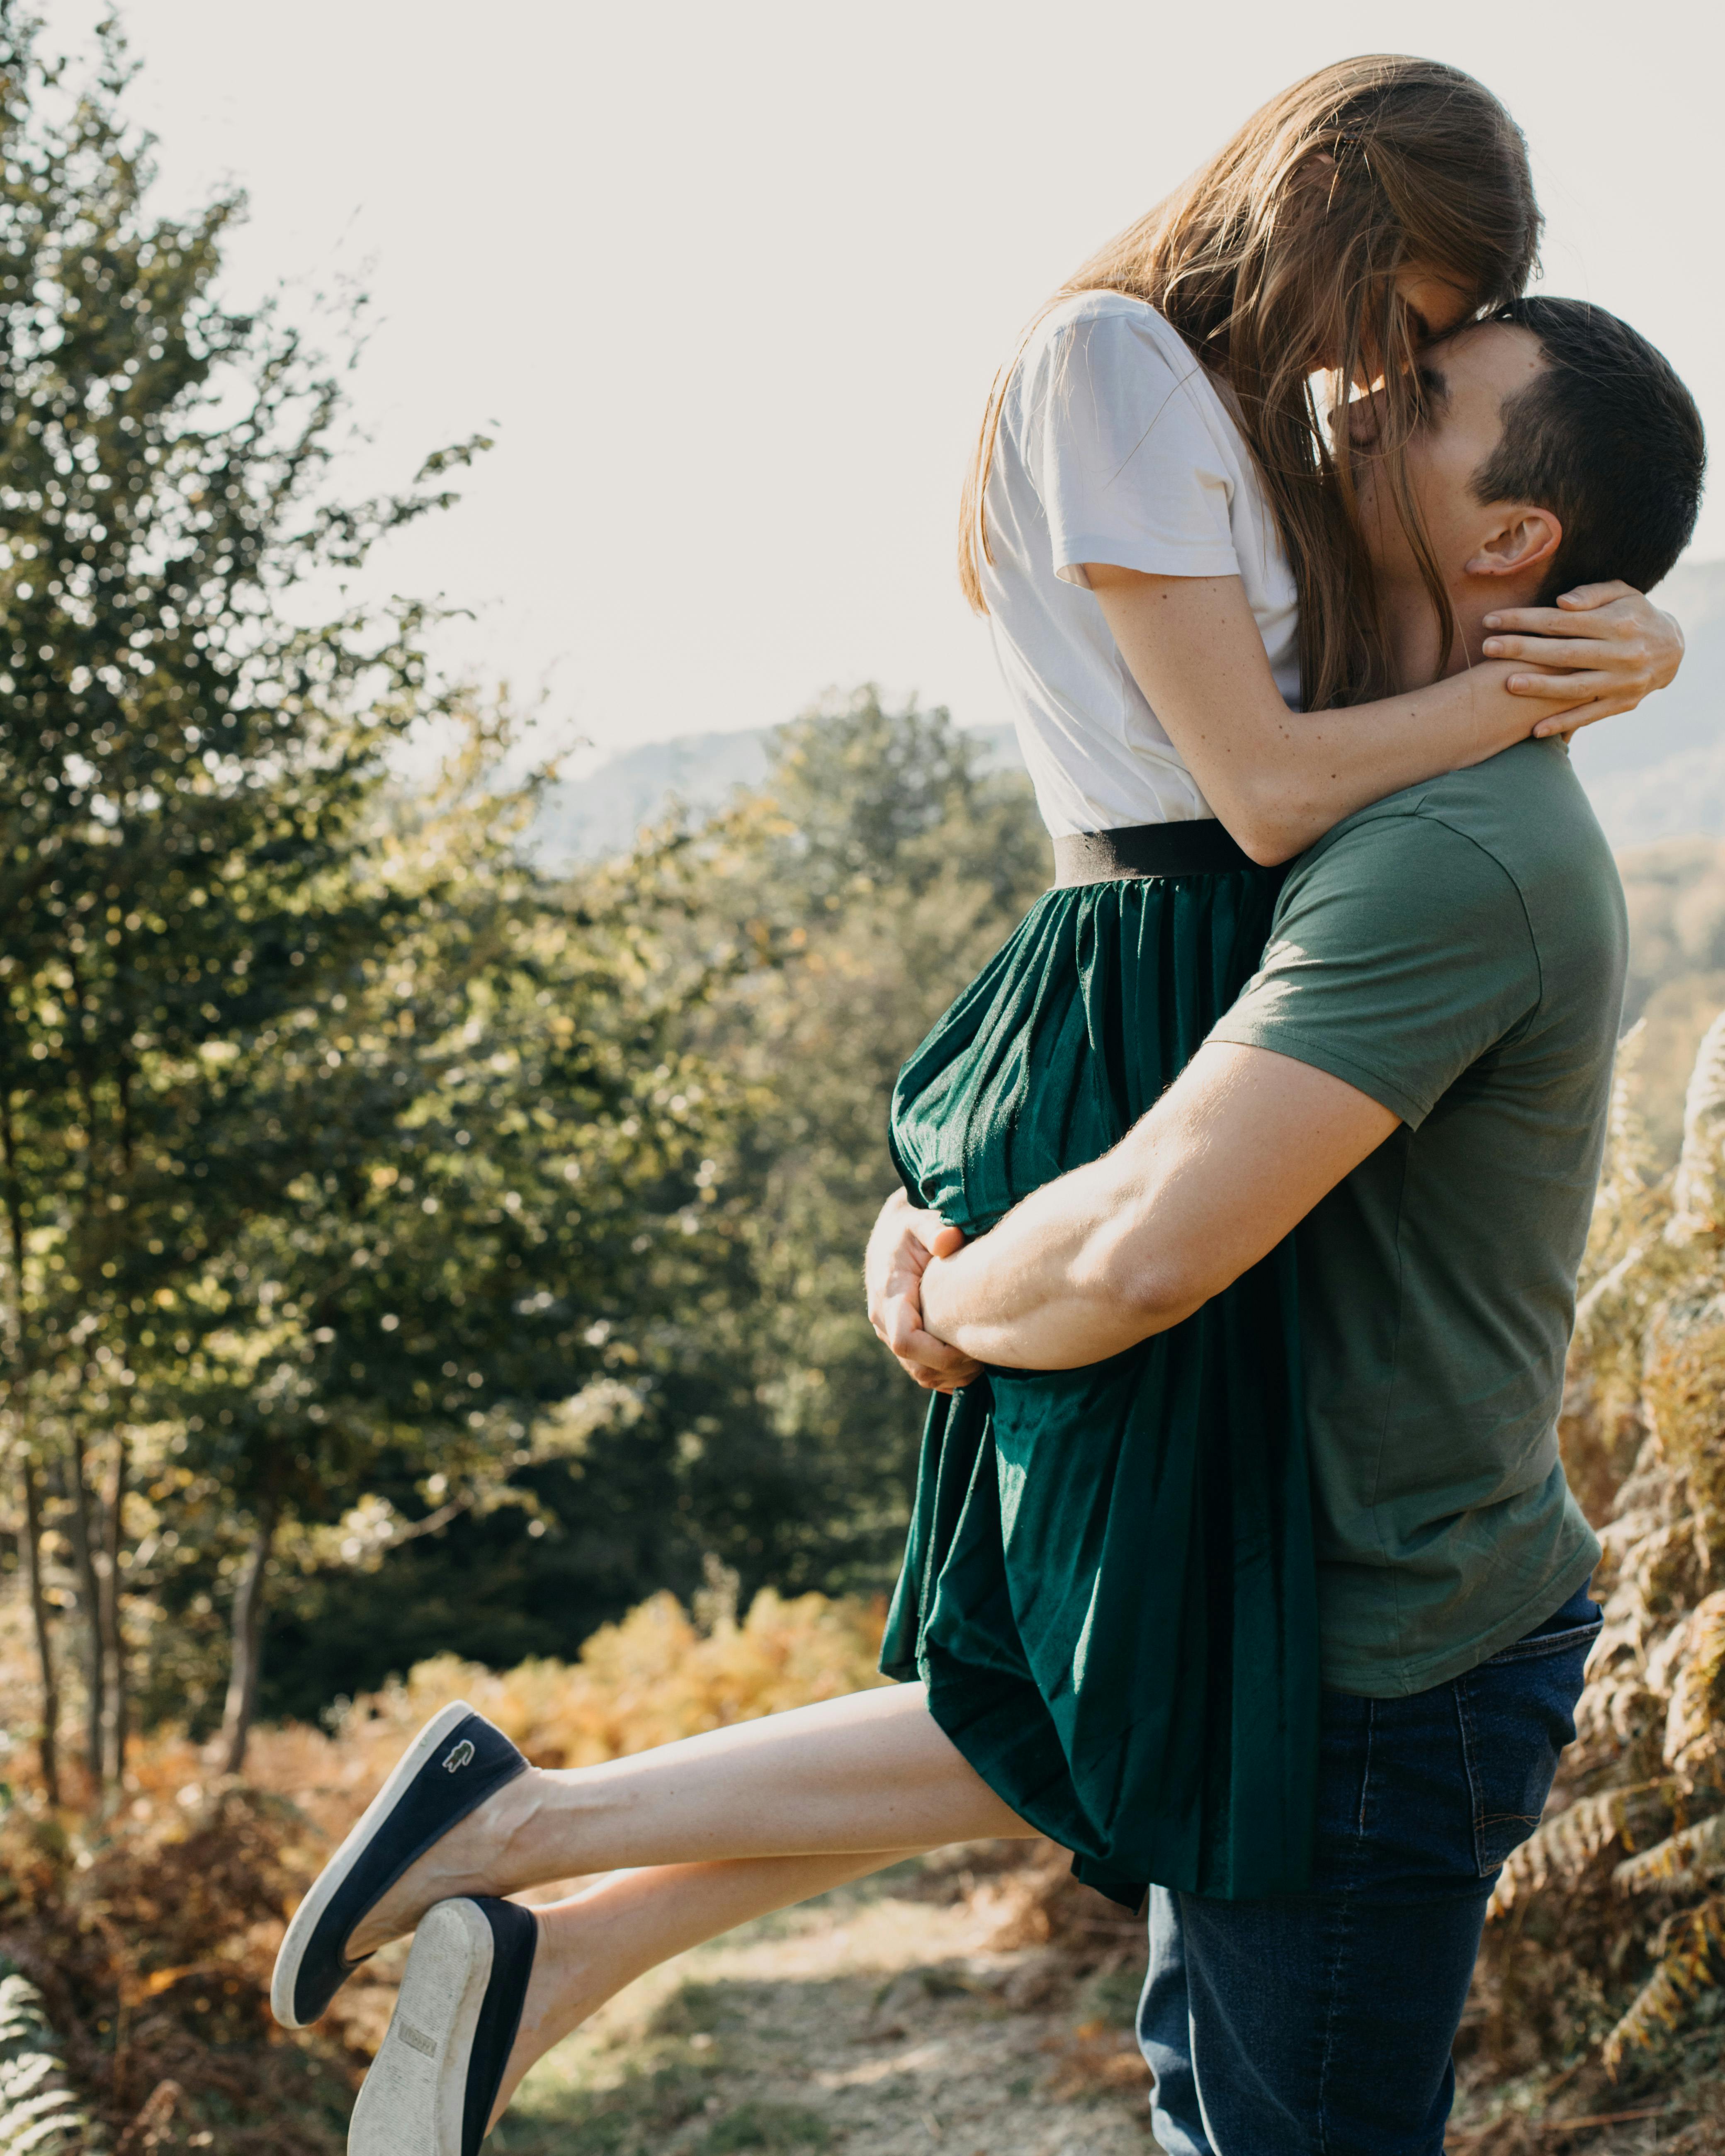 Ein glückliches junges Paar posiert für ein Foto | Quelle: Dmitriy Ganin auf Pexels